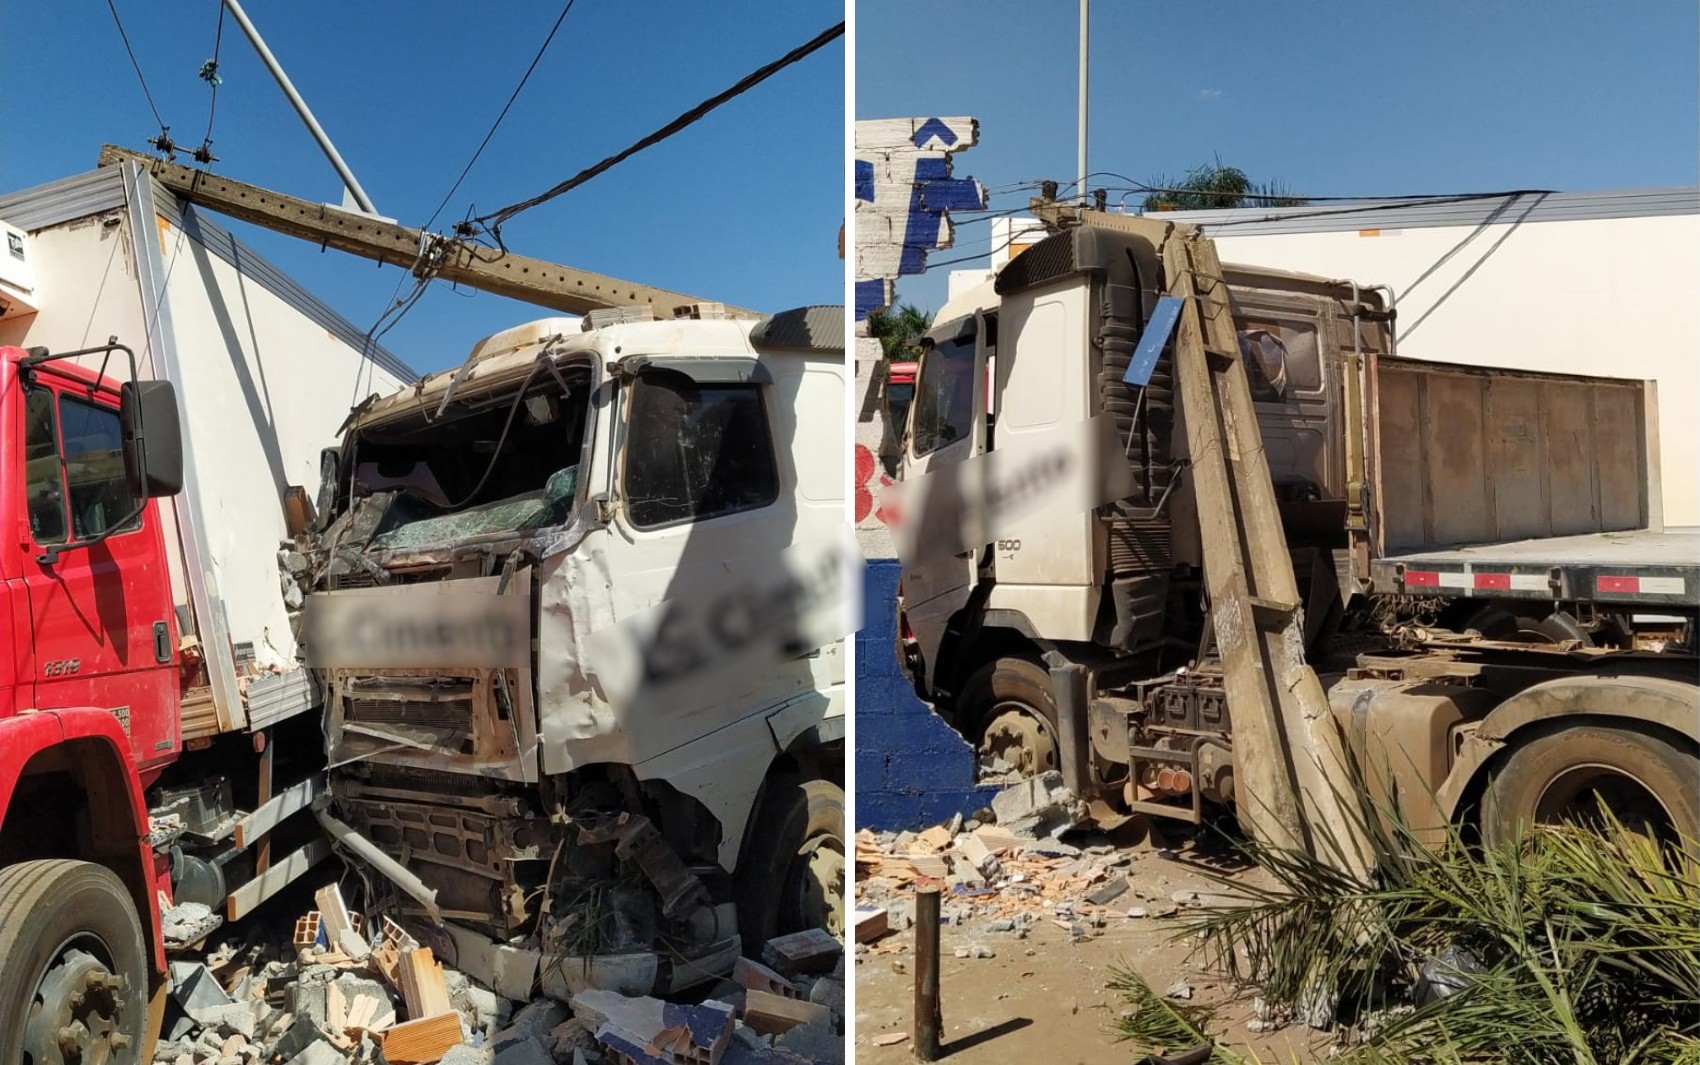 Caminhão derruba poste e vai parar dentro de oficina após batida, em Goiânia 